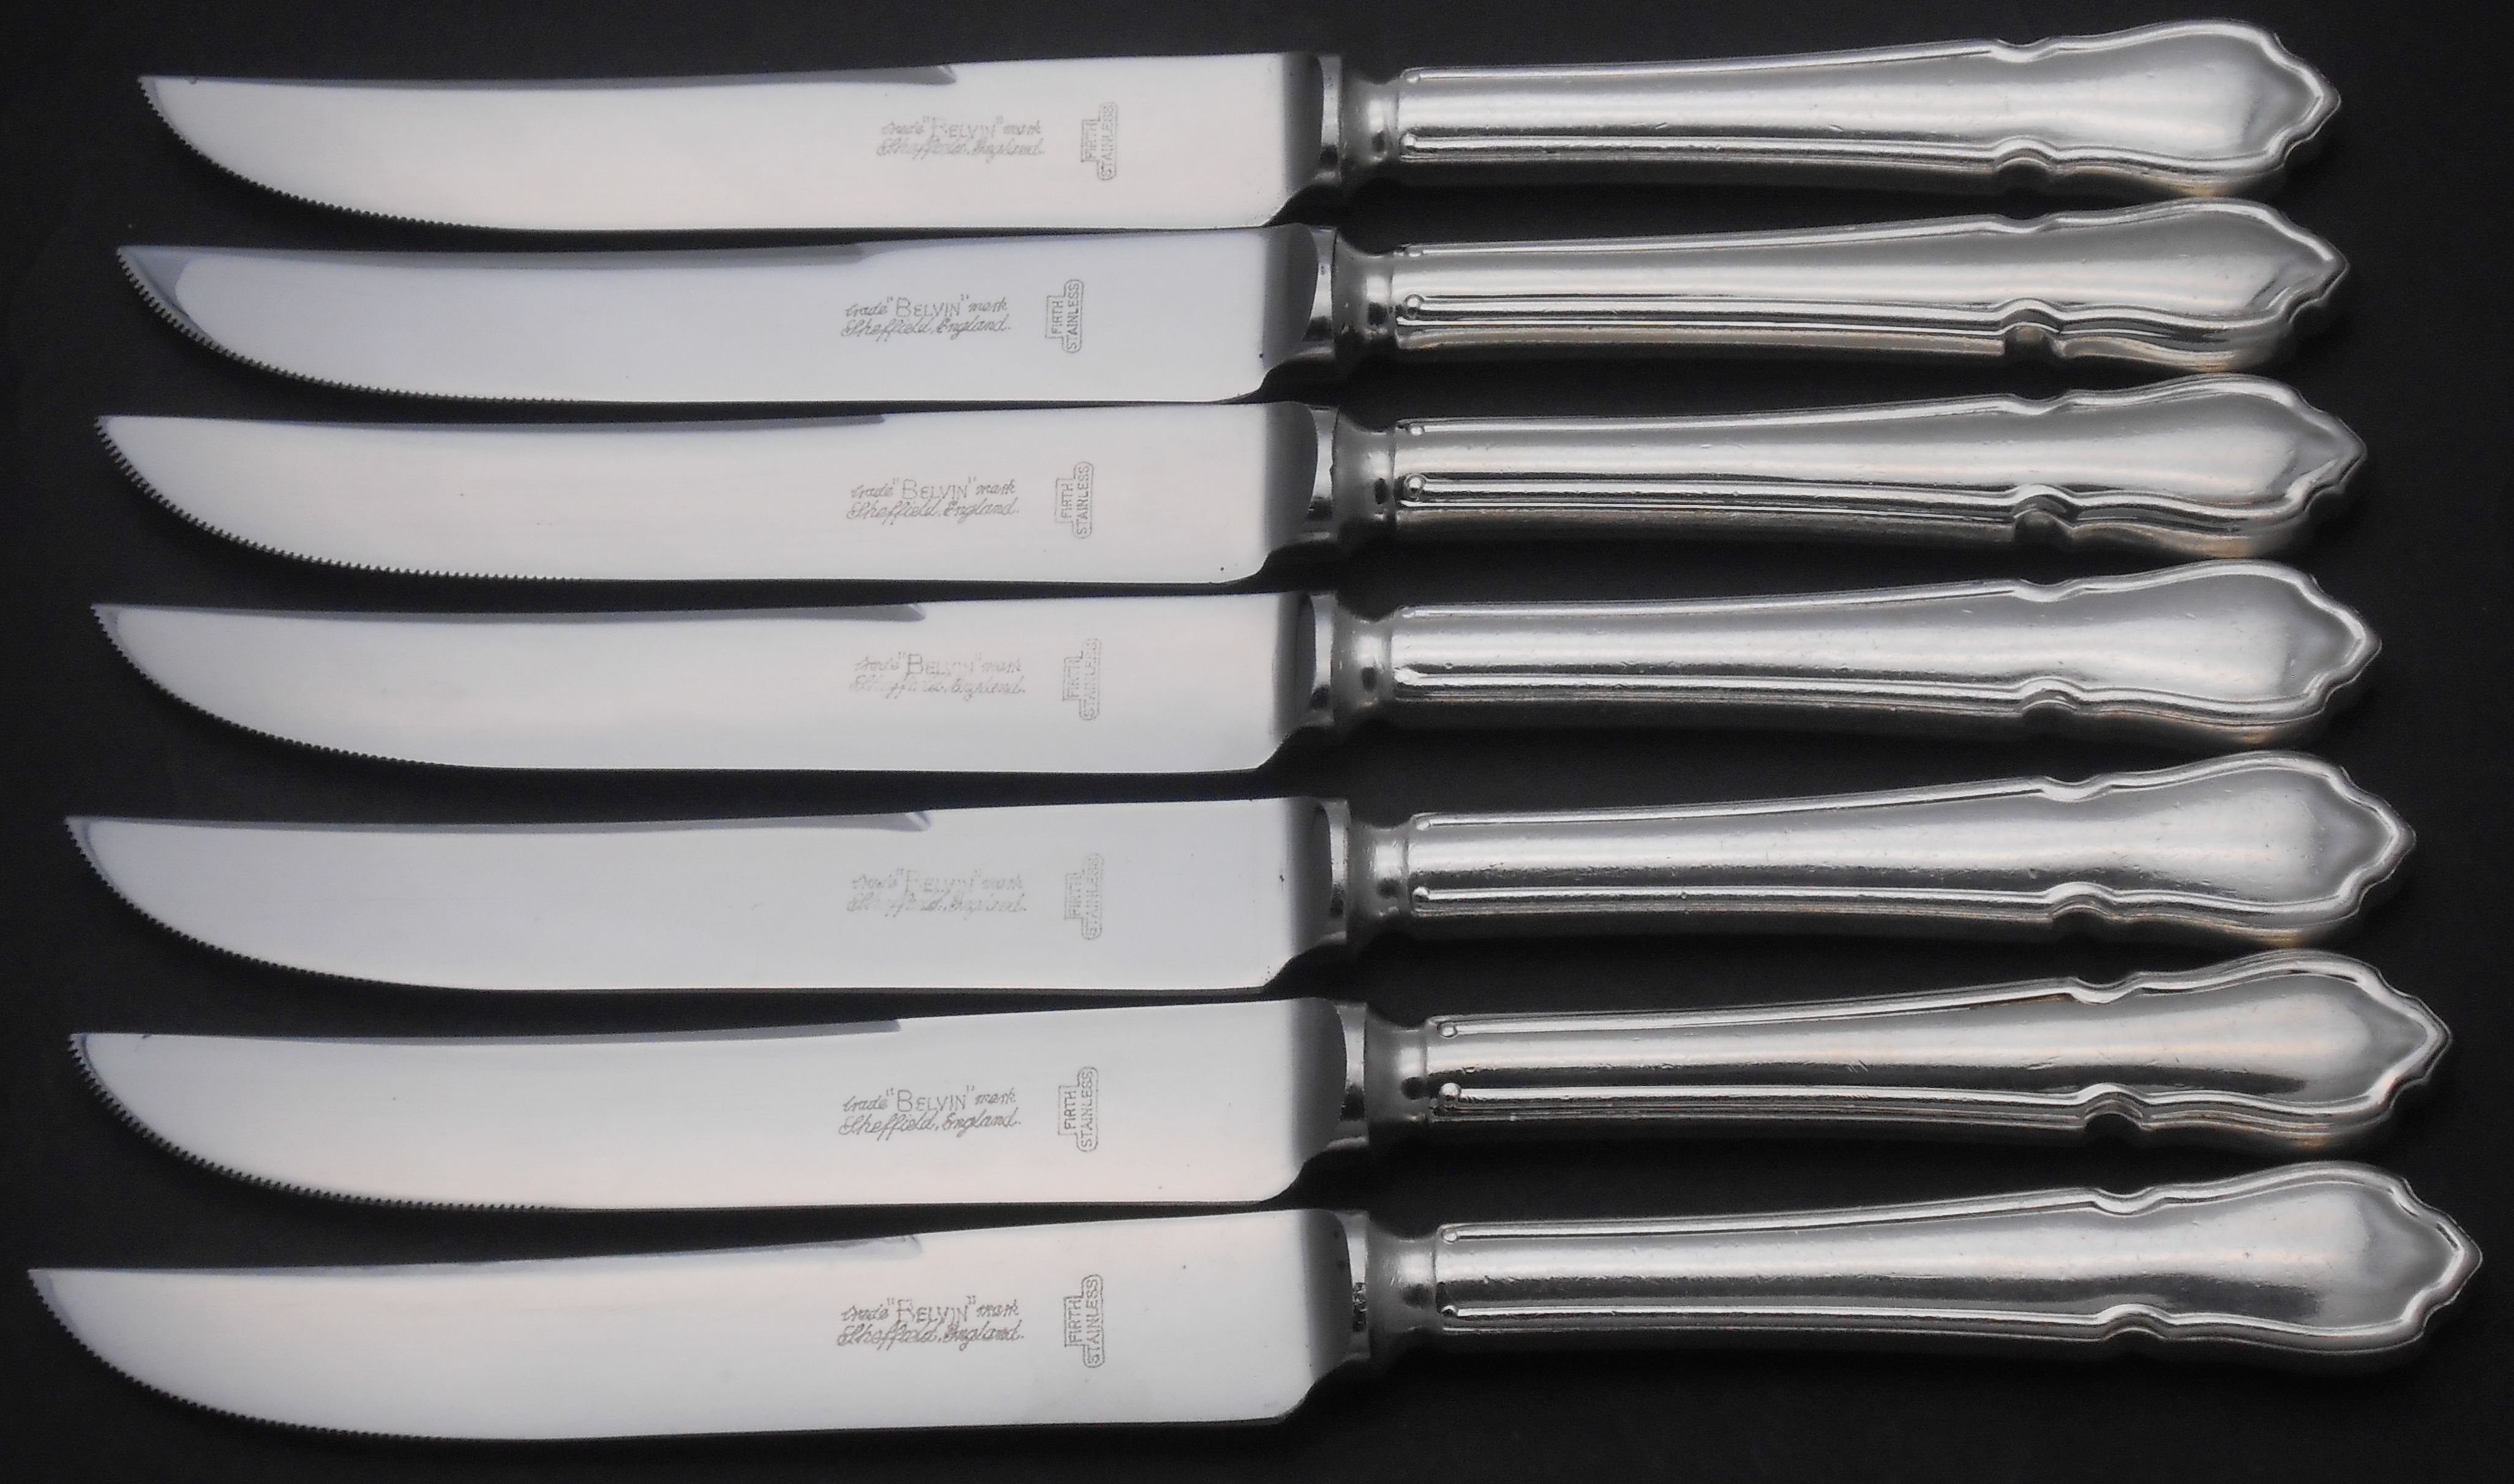 Dubarry pattern cutlery / flatware